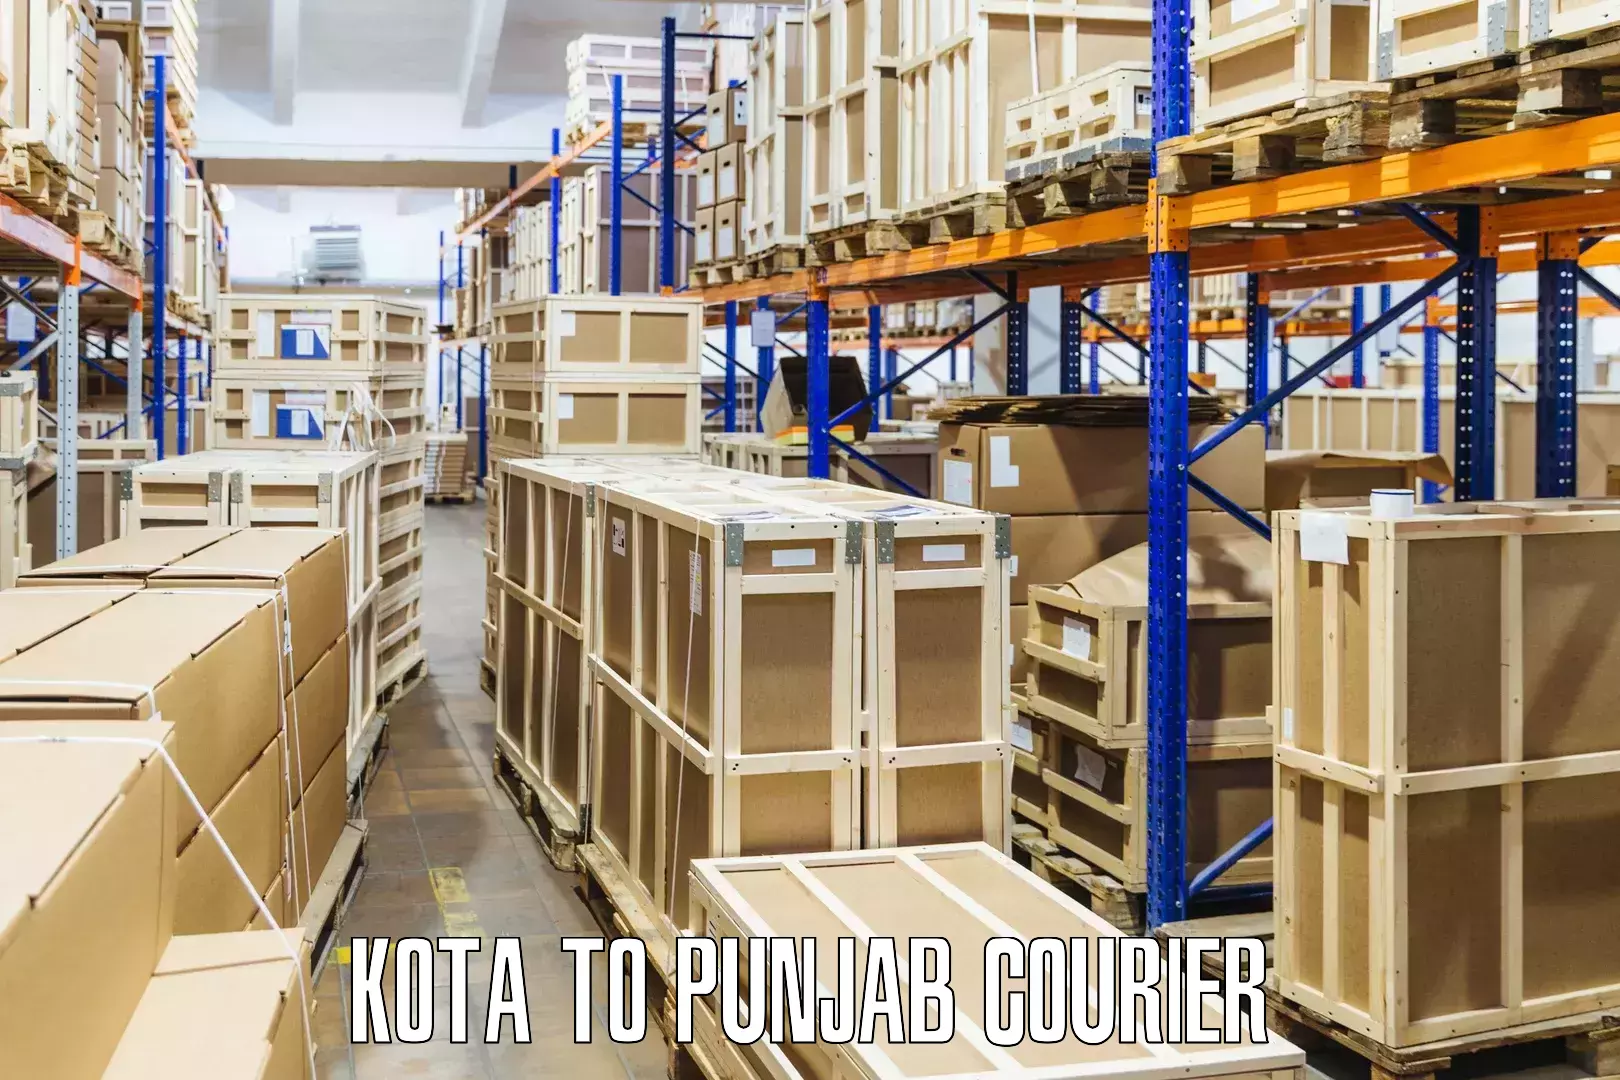 Flexible courier rates Kota to Nangal